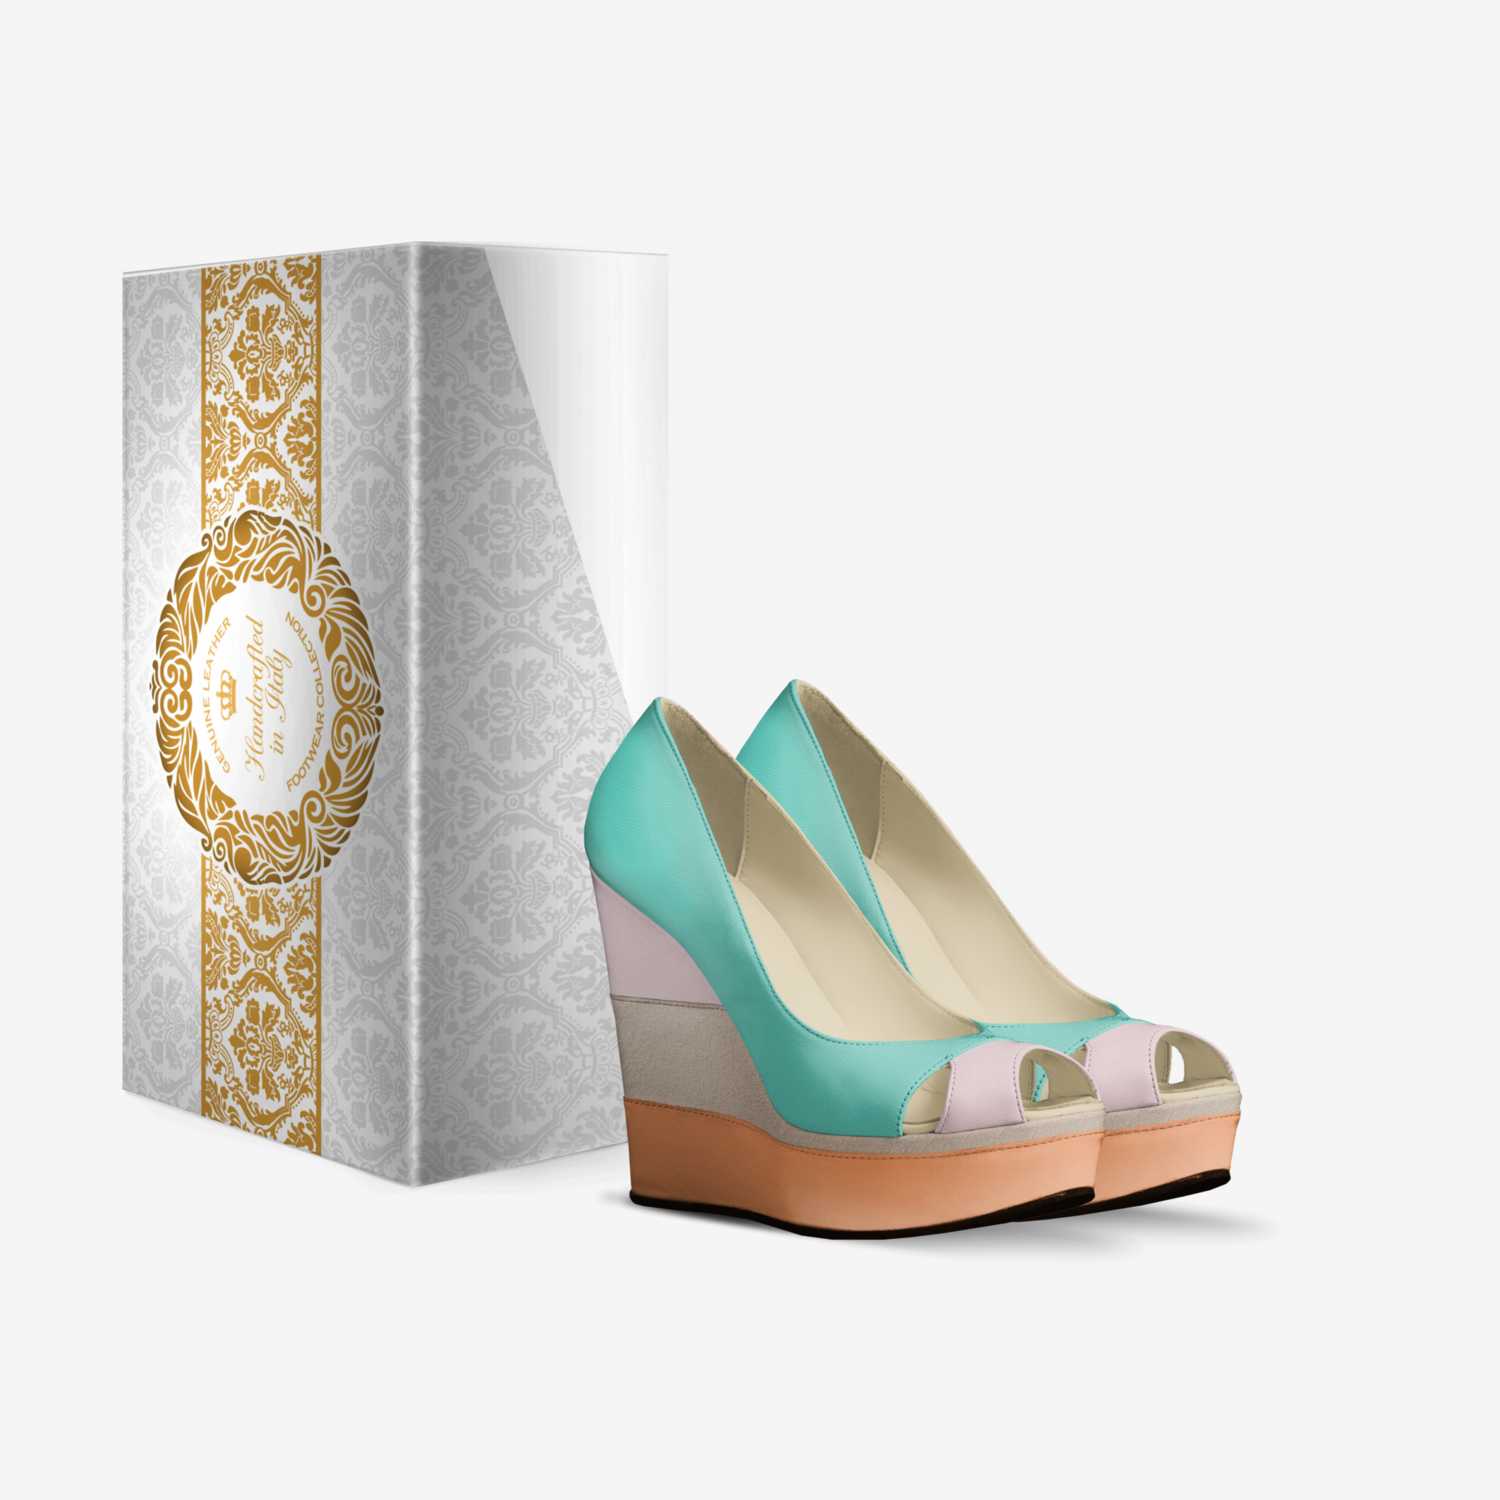 Khari E. custom made in Italy shoes by Karonda Edwards | Box view